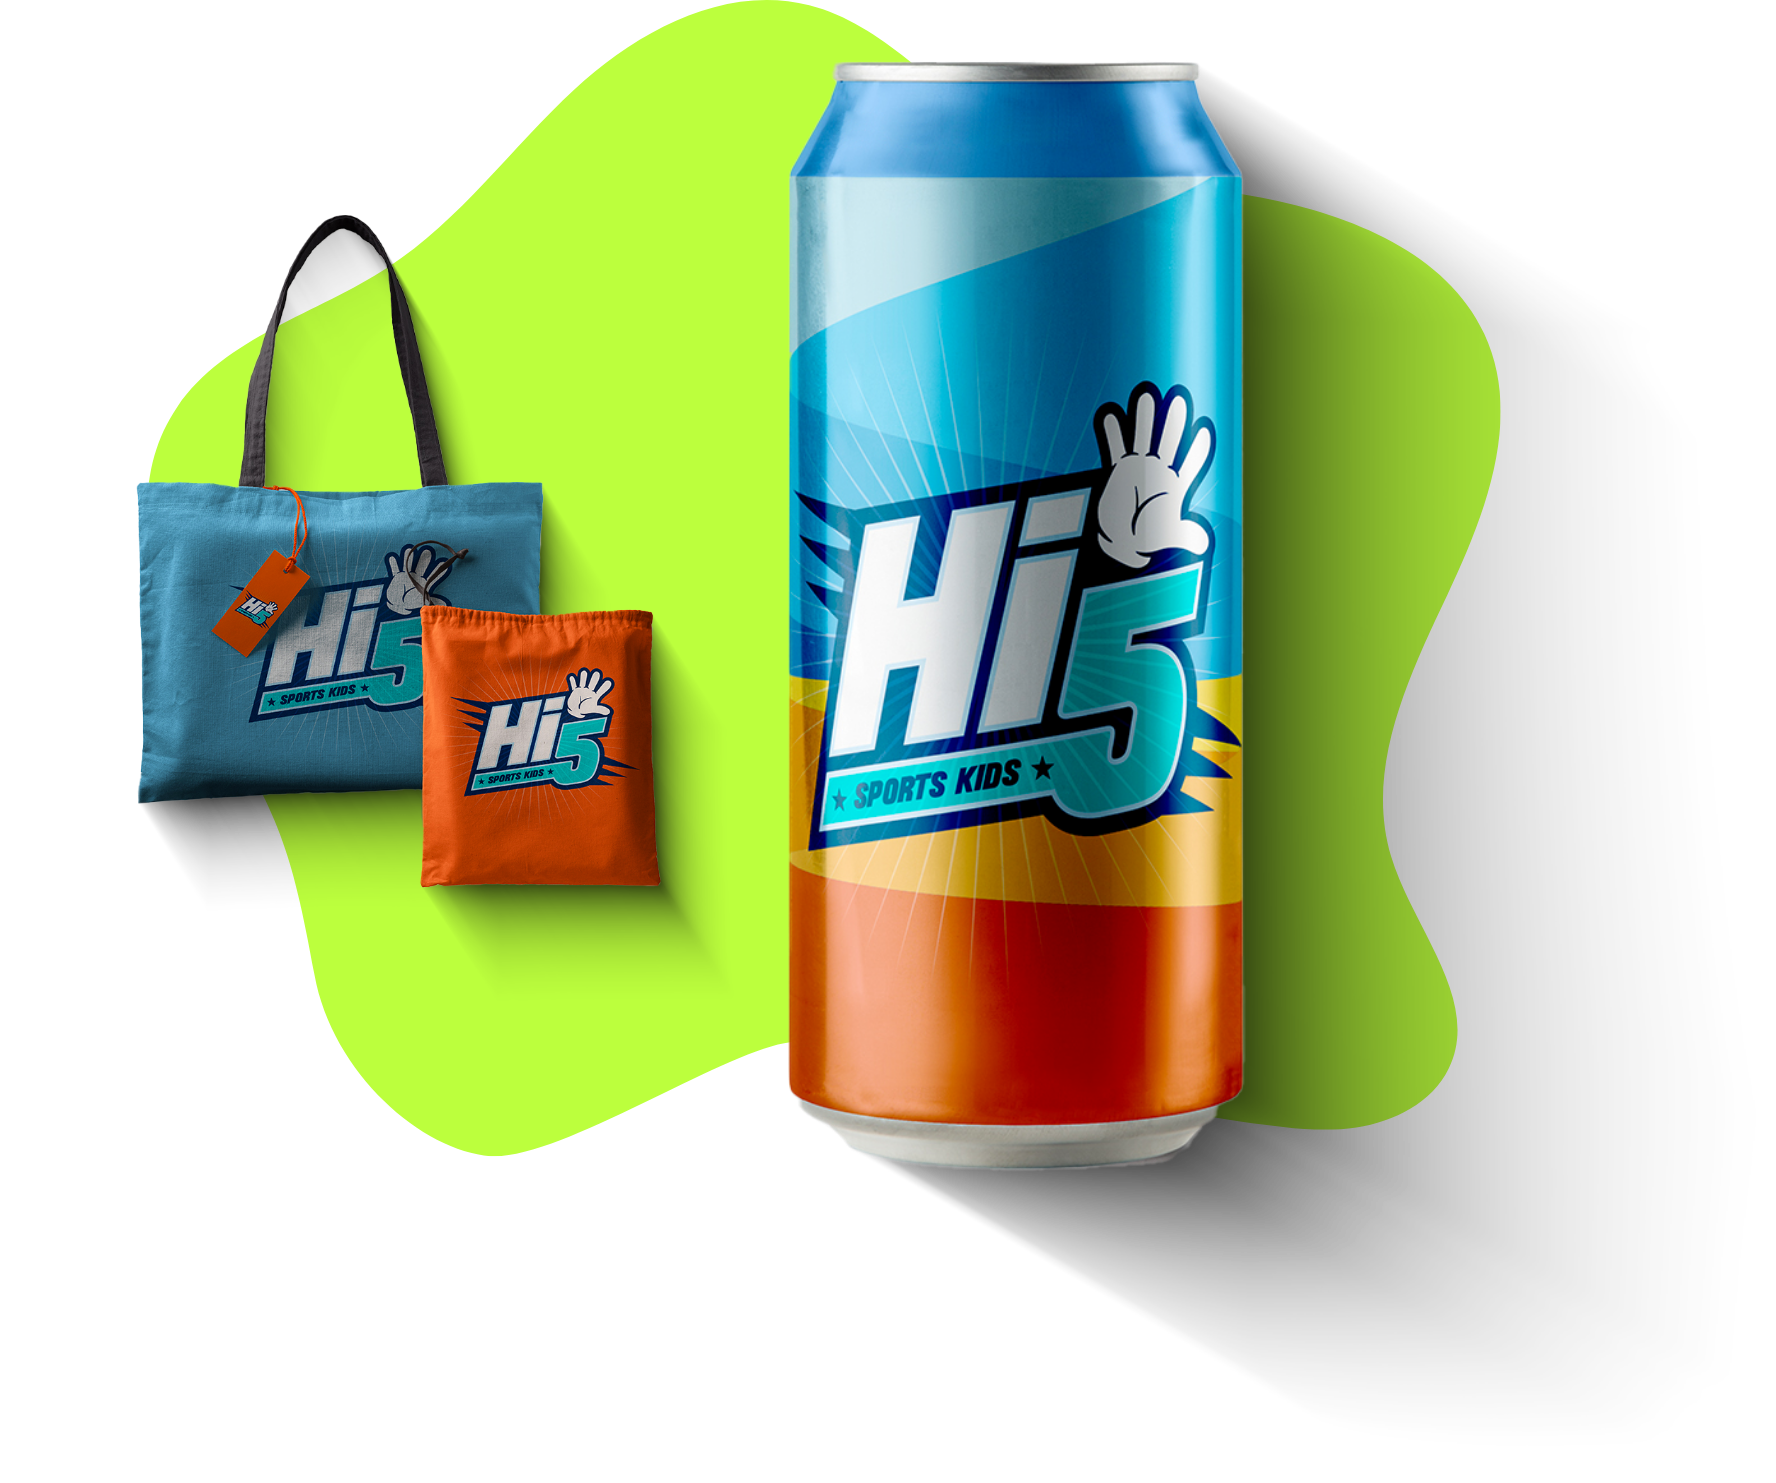 HI5 Designs